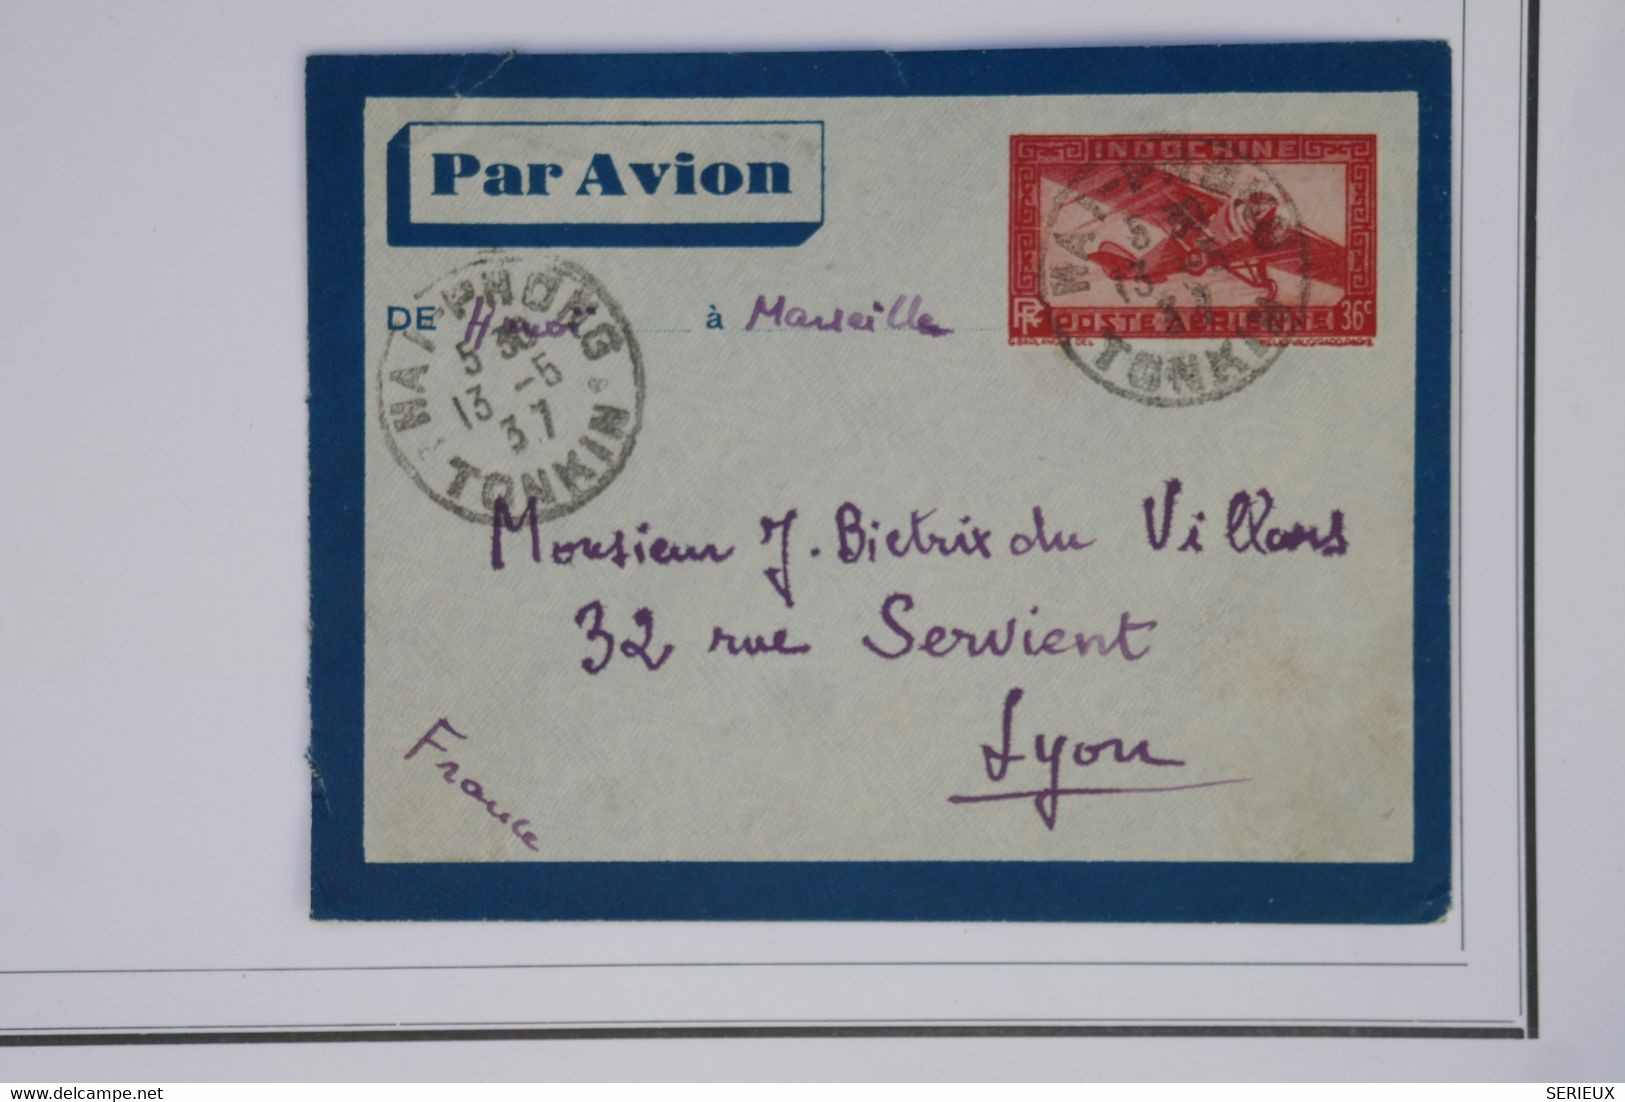 BB6  INDOCHINE  BELLE LETTRE1937 HANOI  TONKIN  POUR LYON FRANCE +++++AFFRANCH.INTERESSANT - Storia Postale